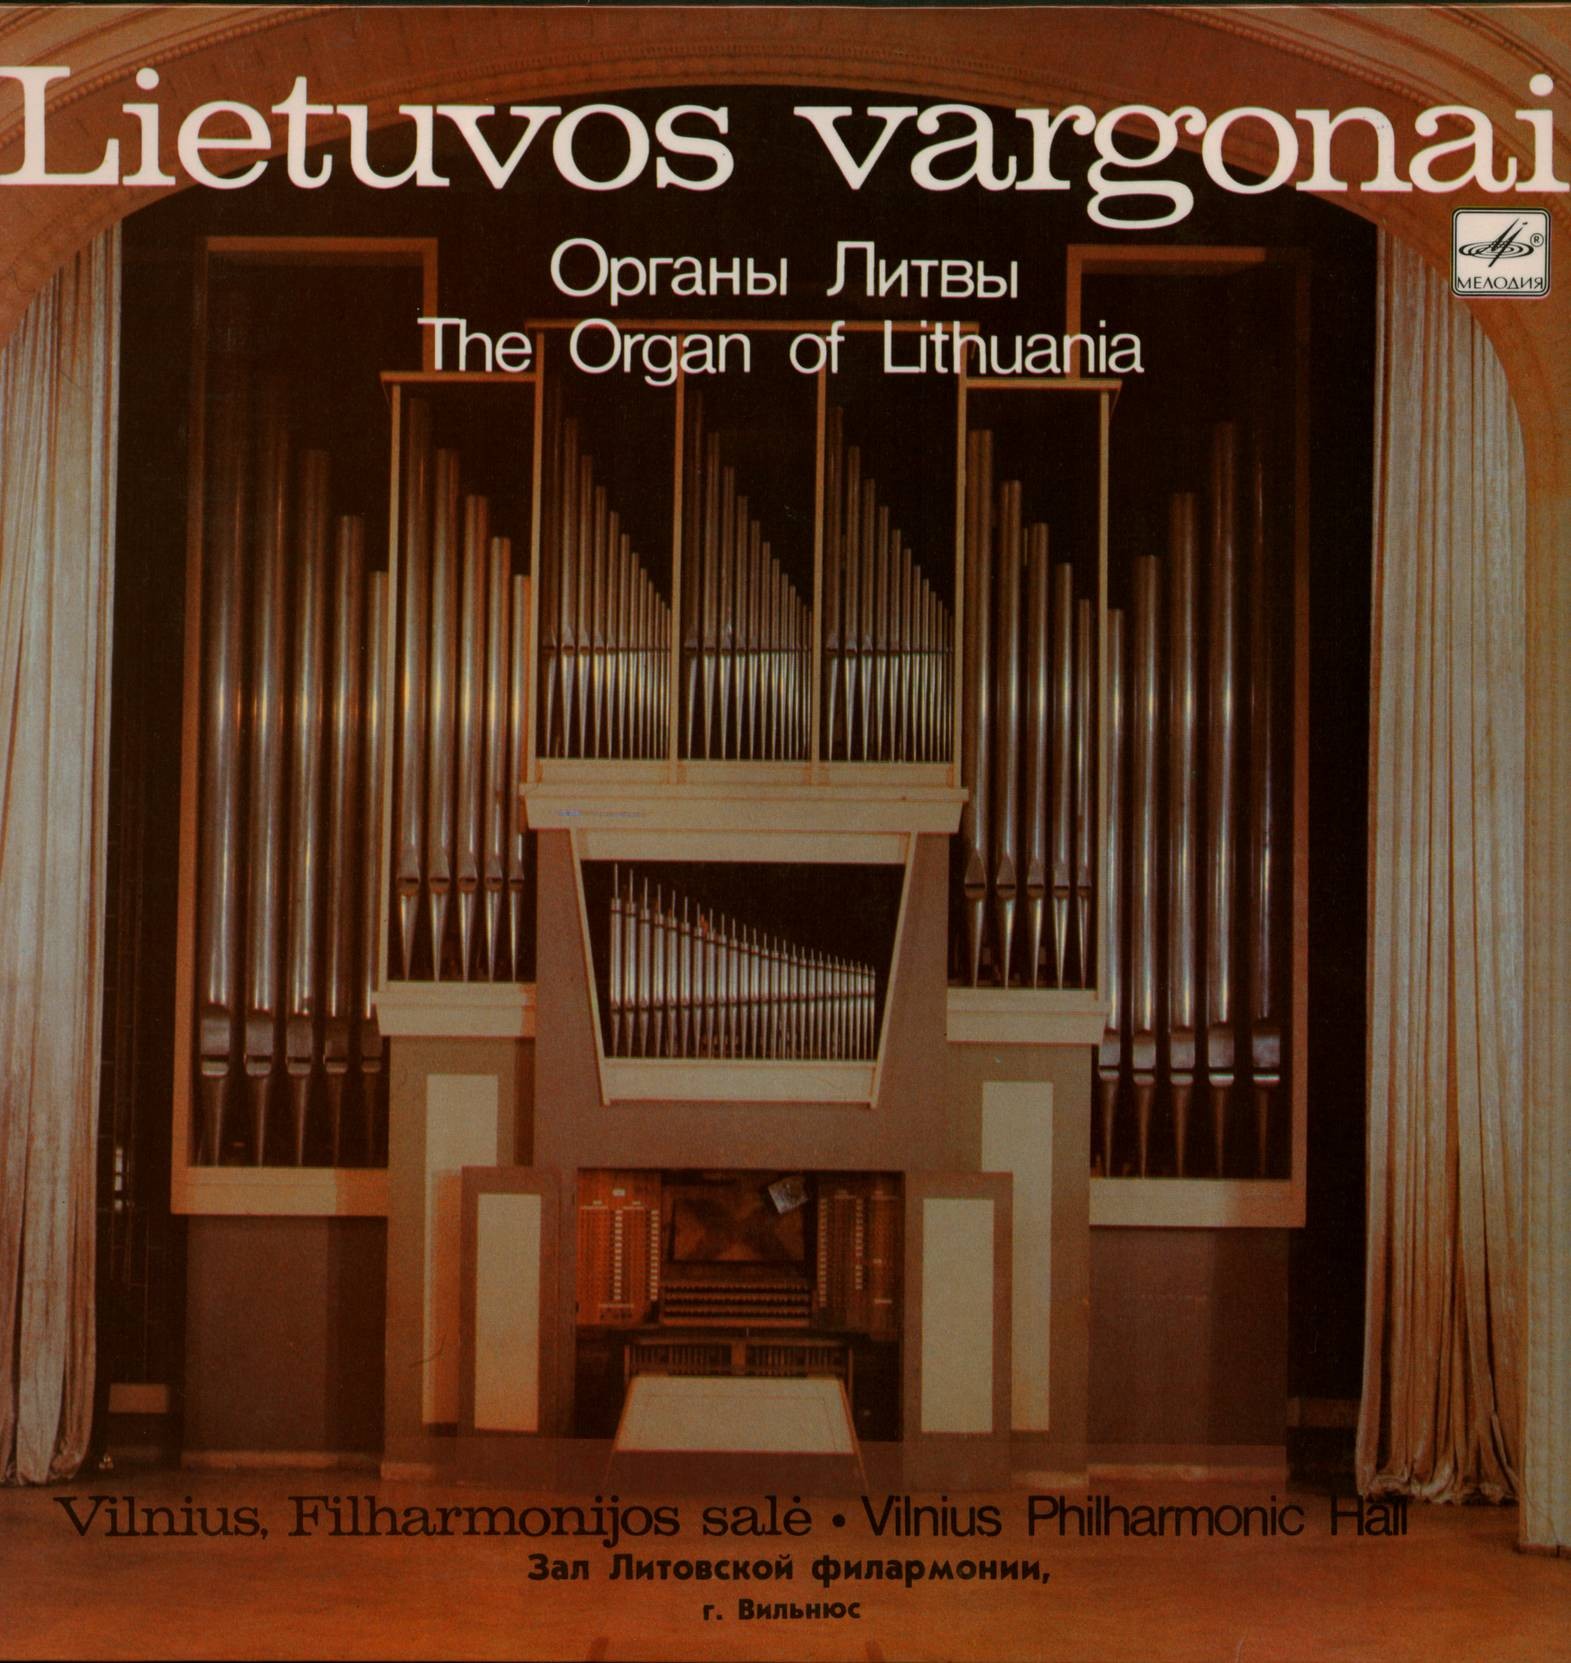 Нийоле ДАЙНЕНЕ (орган зала Литовской филармонии, Вильнюс)